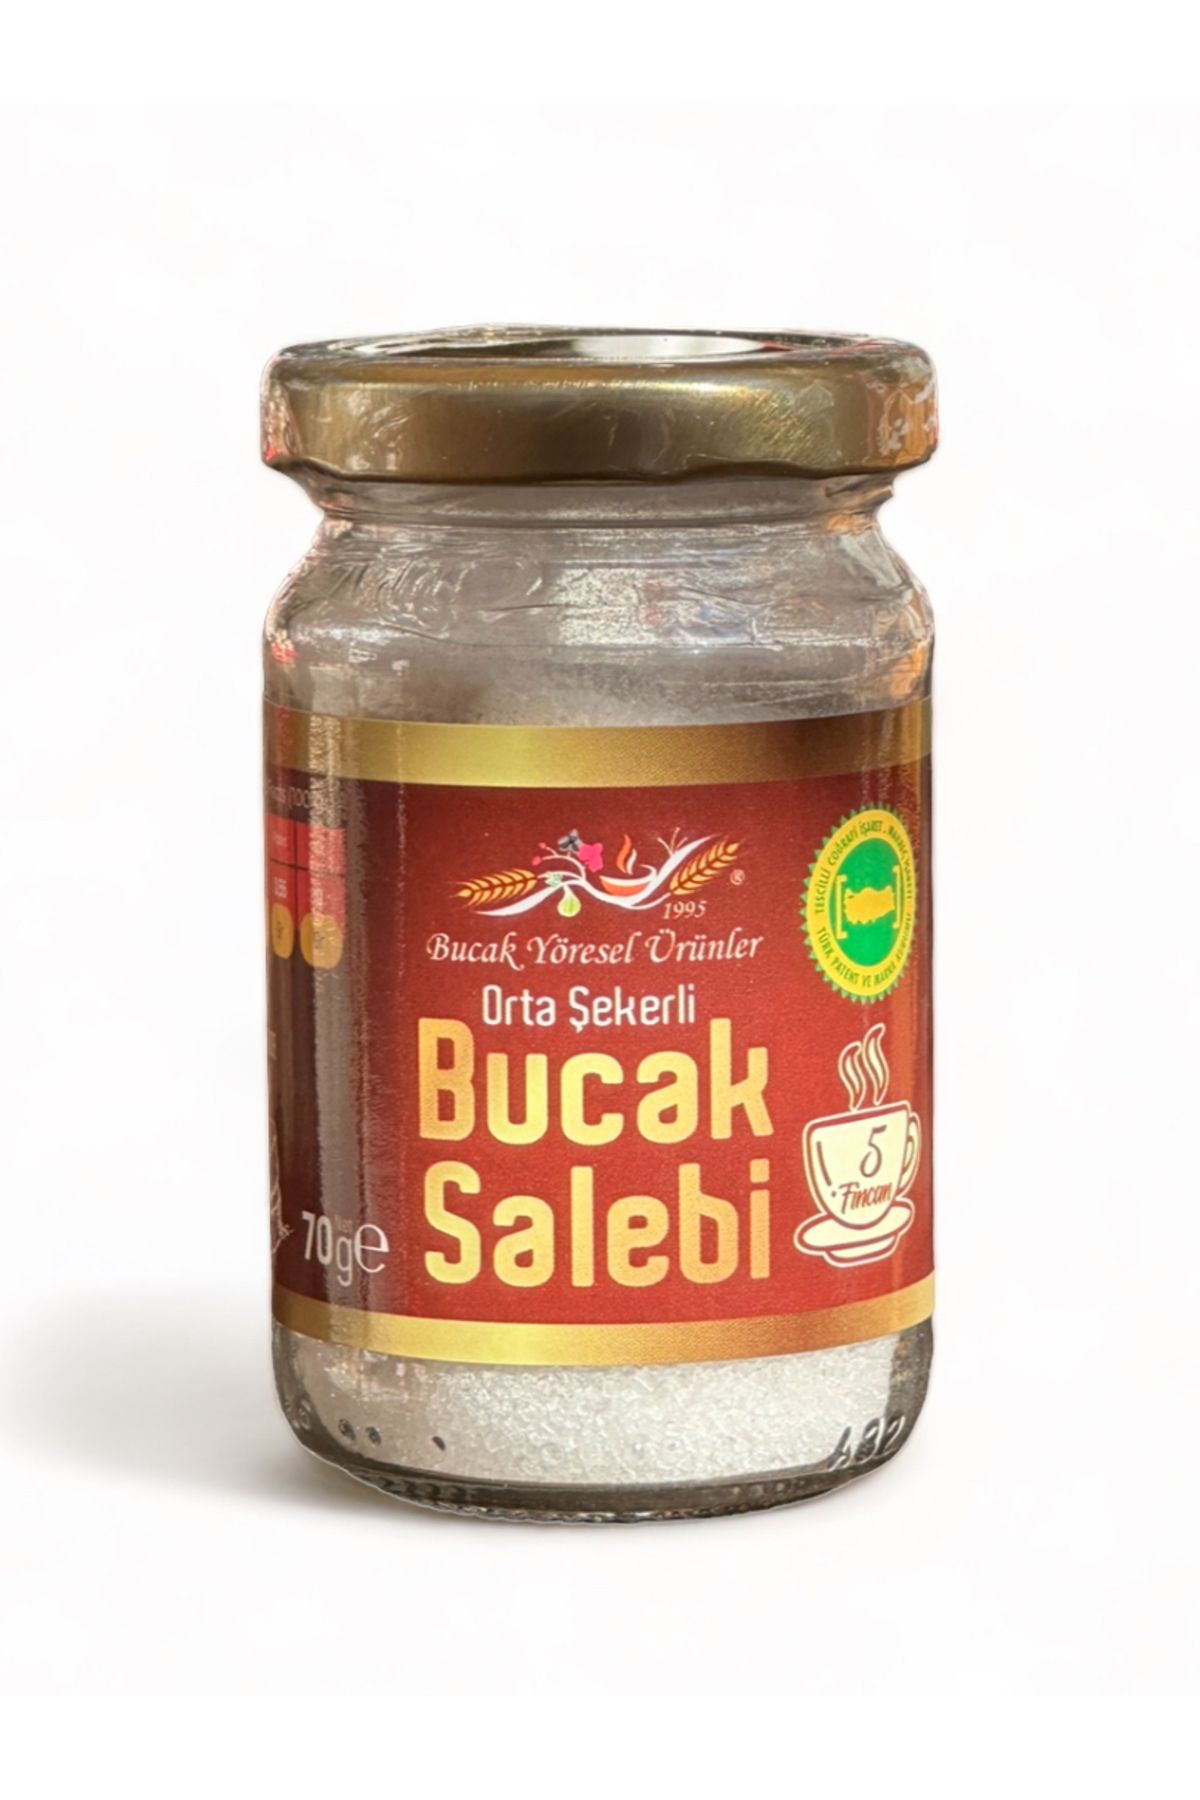 Bucak Yöresel Ürünler Bucak Salebi, 5 Fincanlık Sıcak Salep/1 Kg Dondurma Salebi, Hakiki Bucak Sahlebi + Şeker